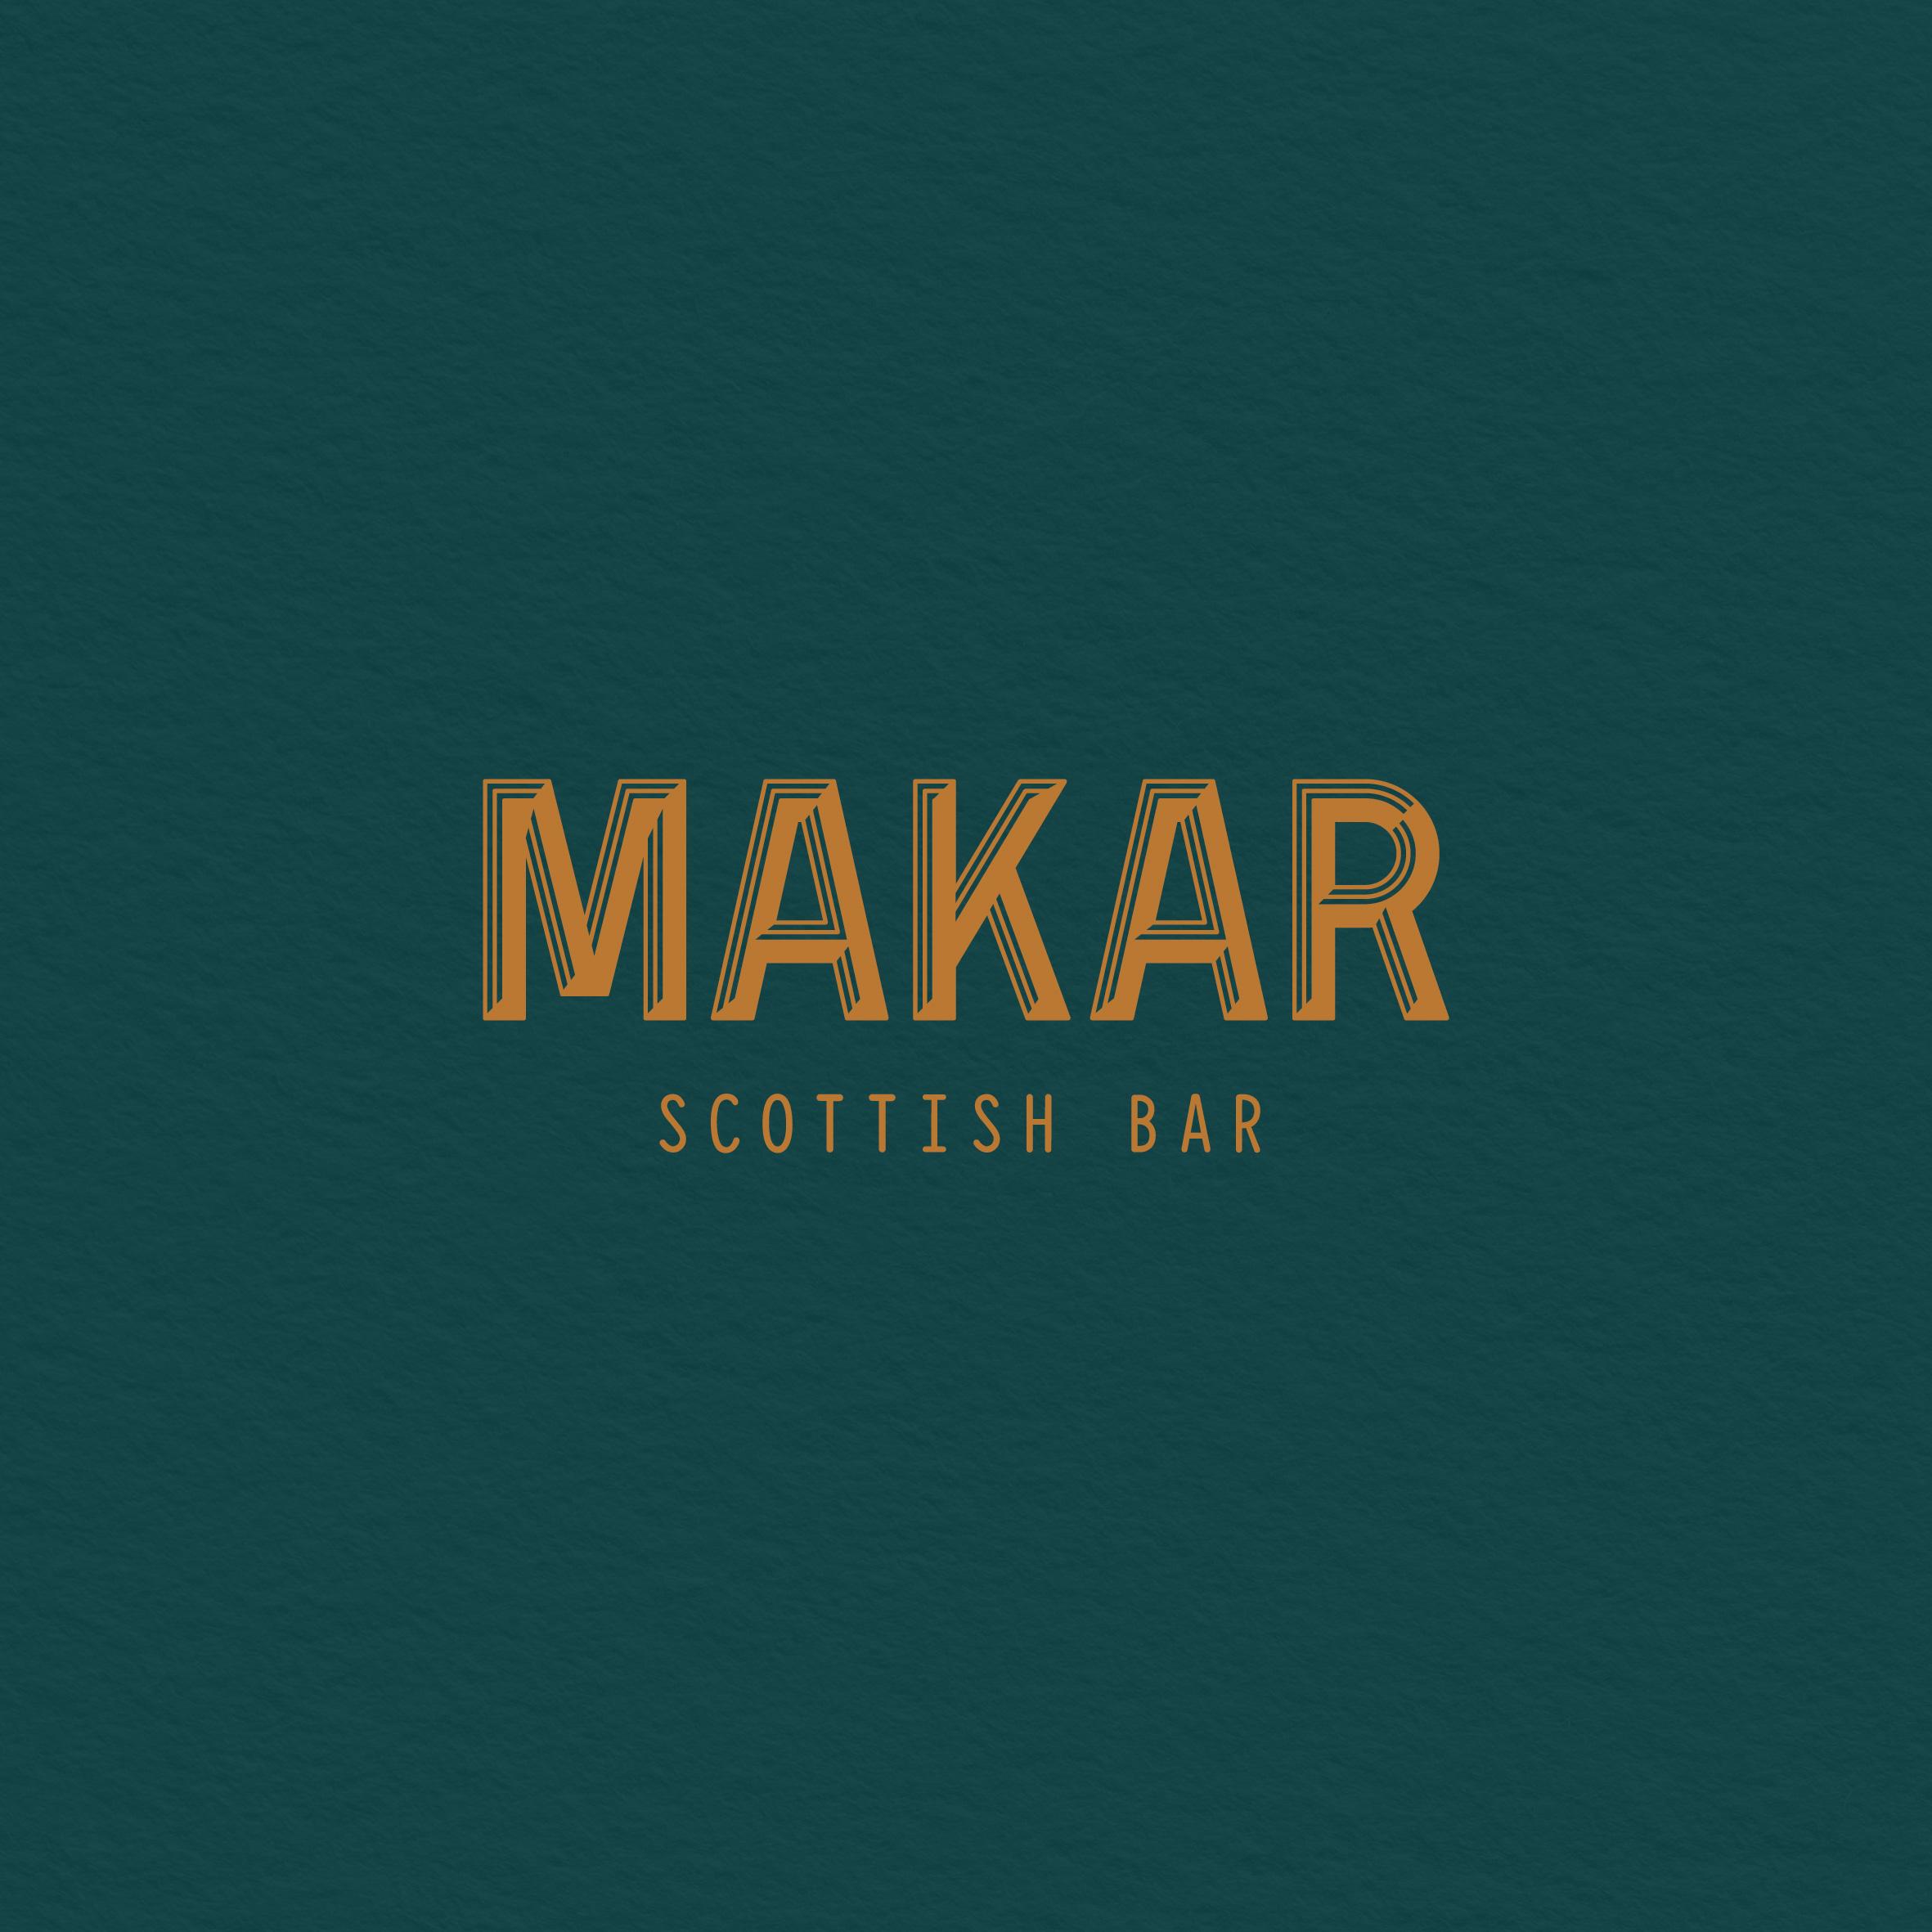 Makar Scottish Bar